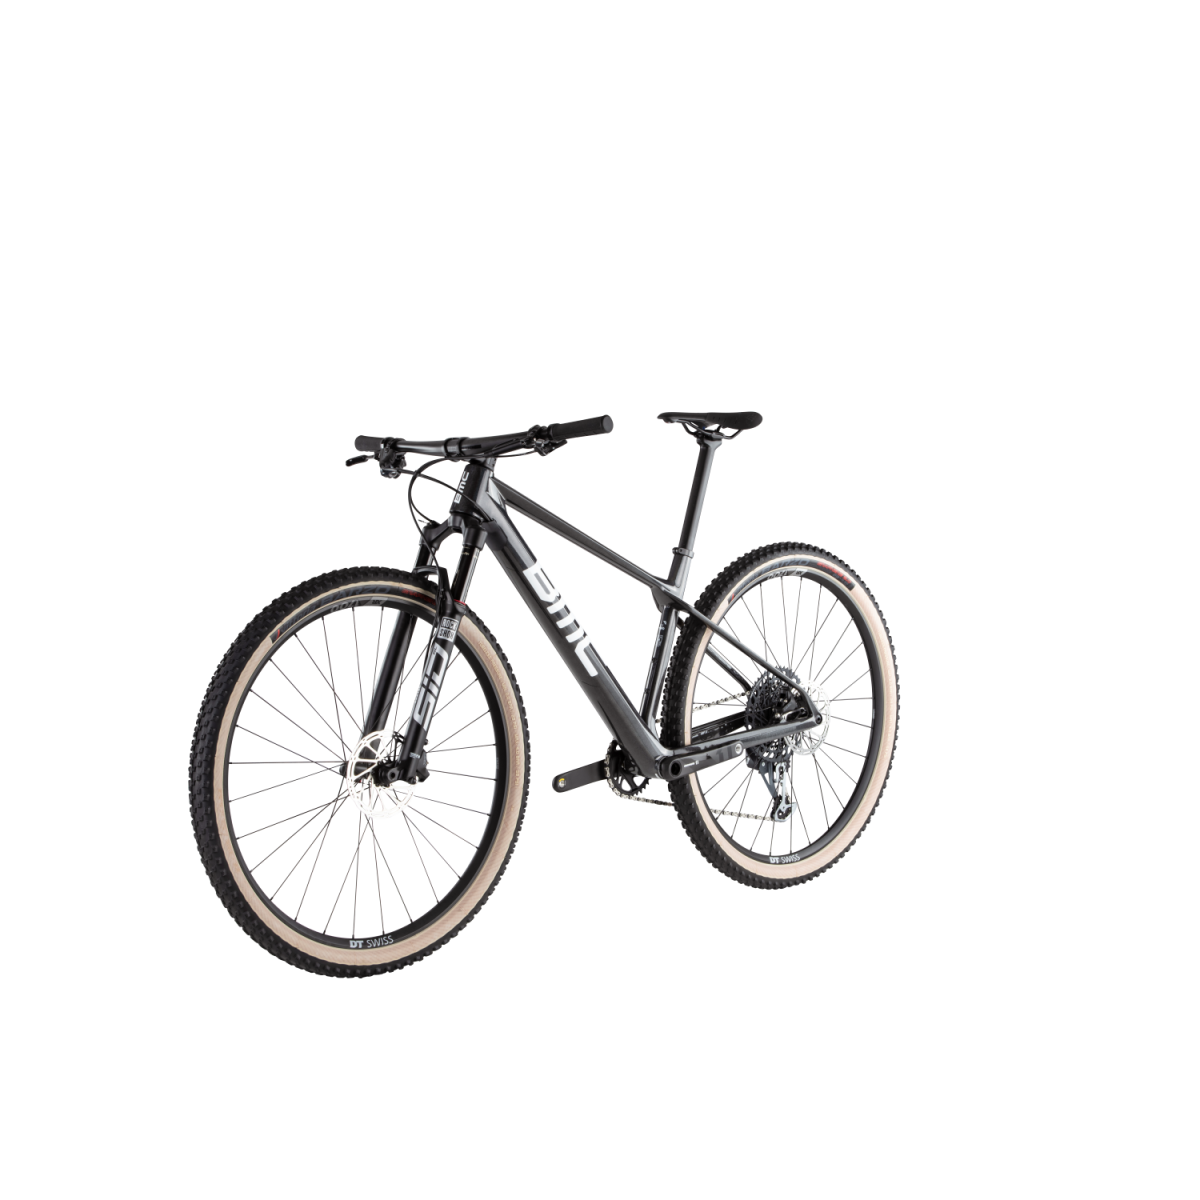 BMC Twostroke 01 Two kalnų dviratis / Anthracite Prisma - White